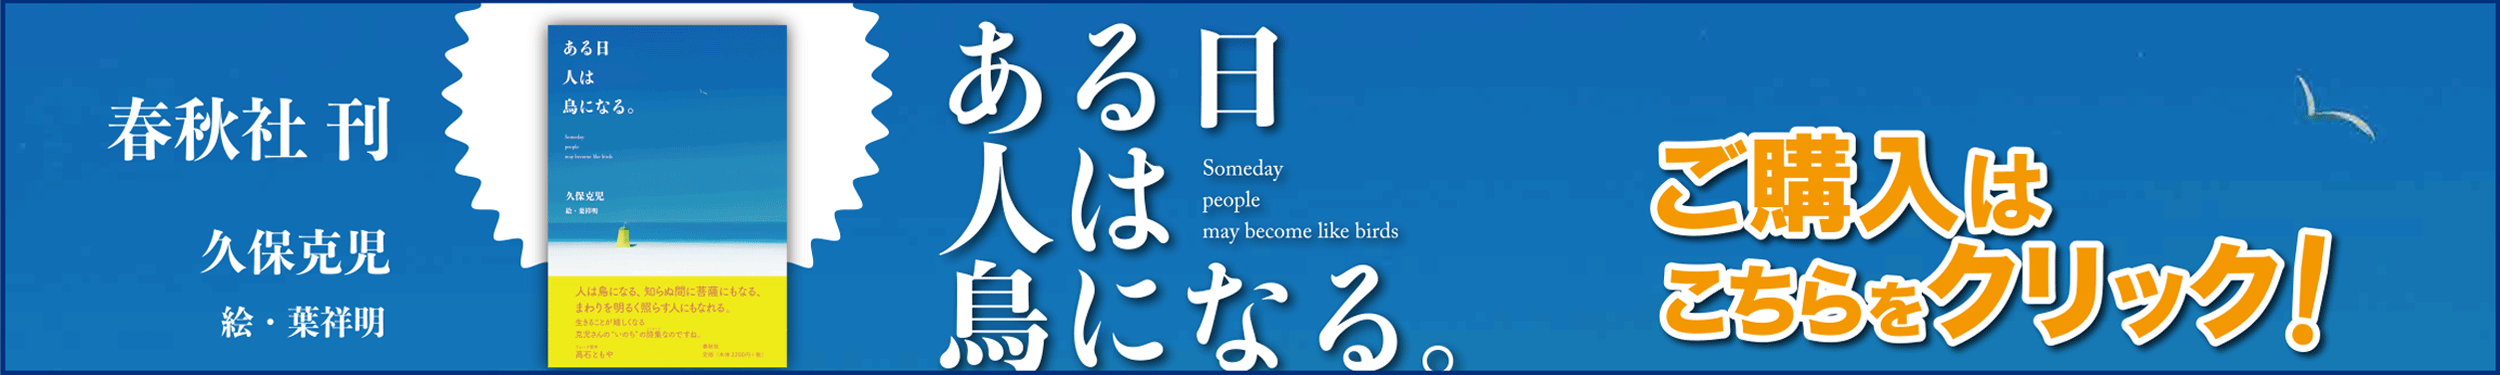 詩集『ある日 人は 鳥になる。』